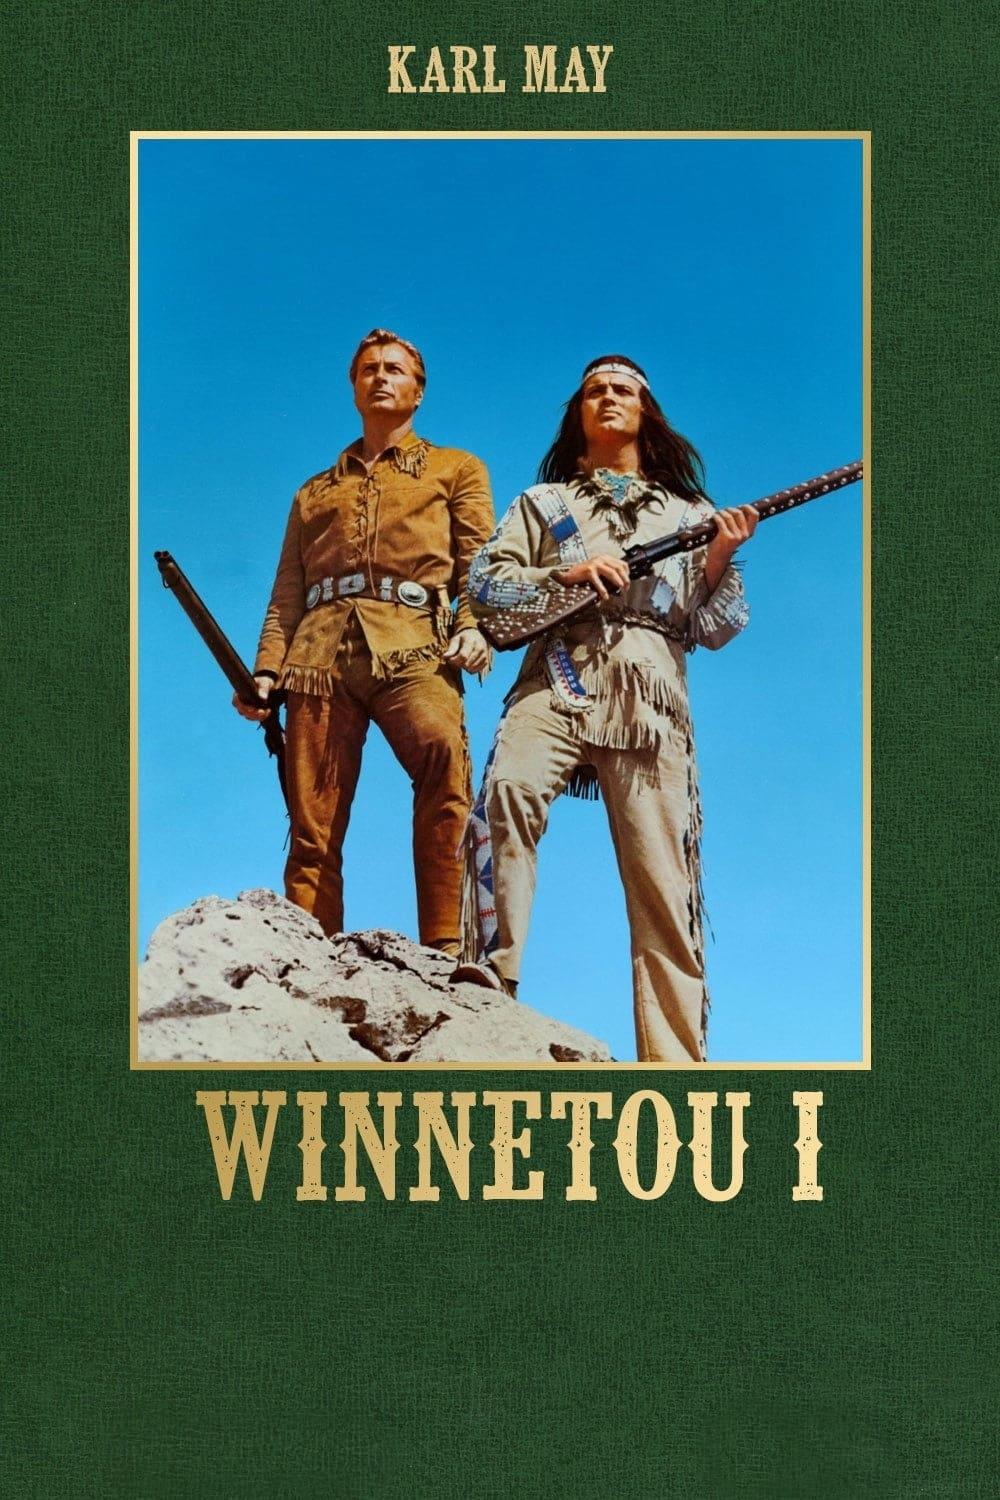 Winnetou 1 poster